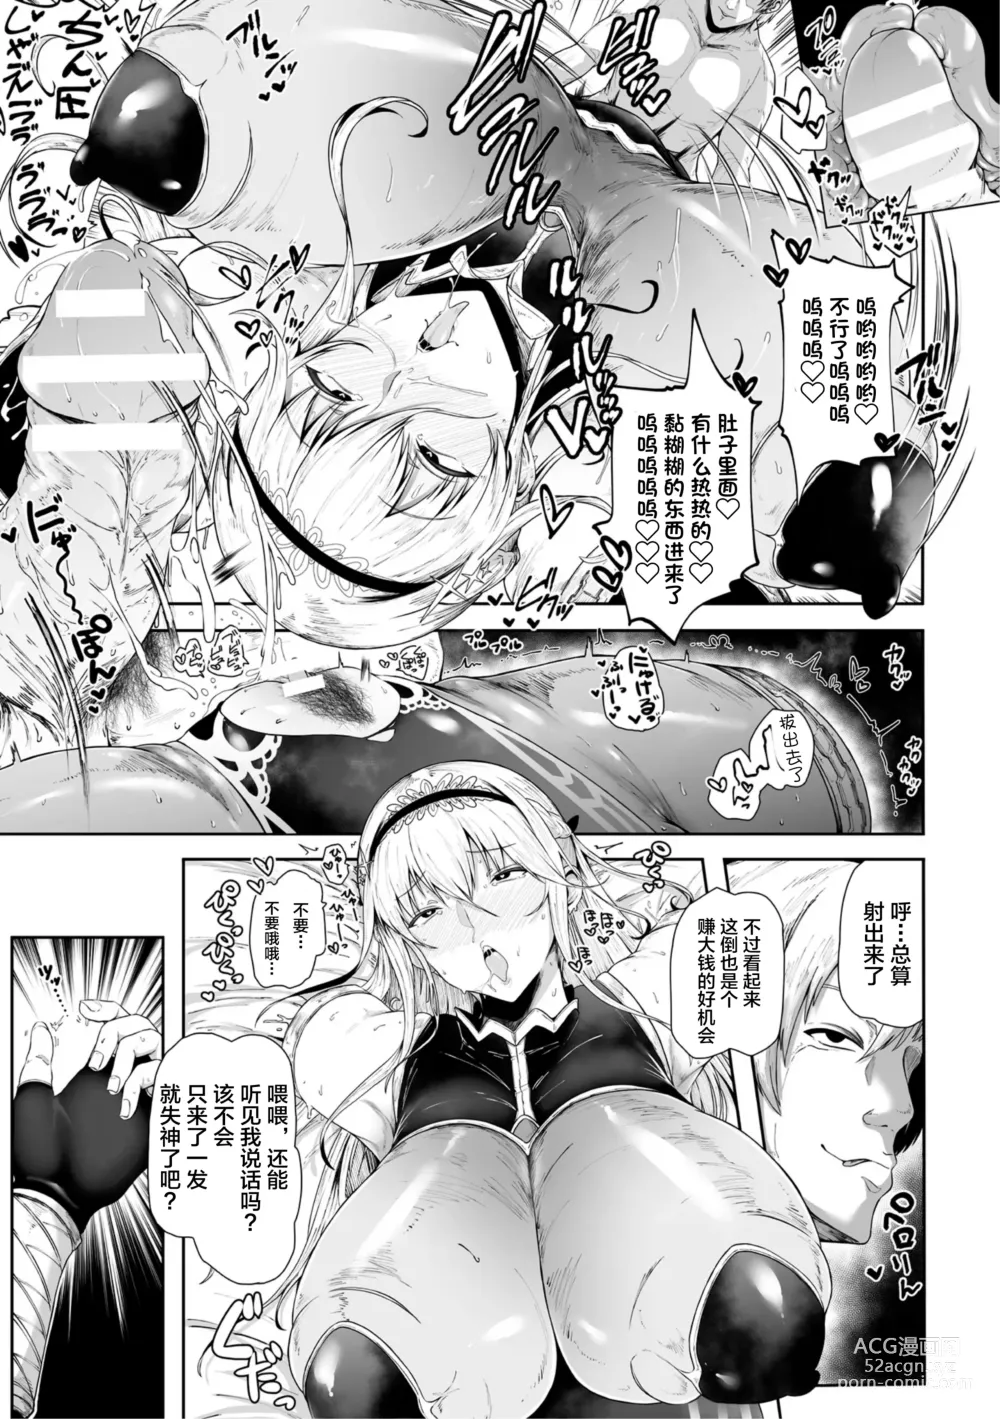 Page 13 of manga Ane-Kishi wa Migawari Nikubenki